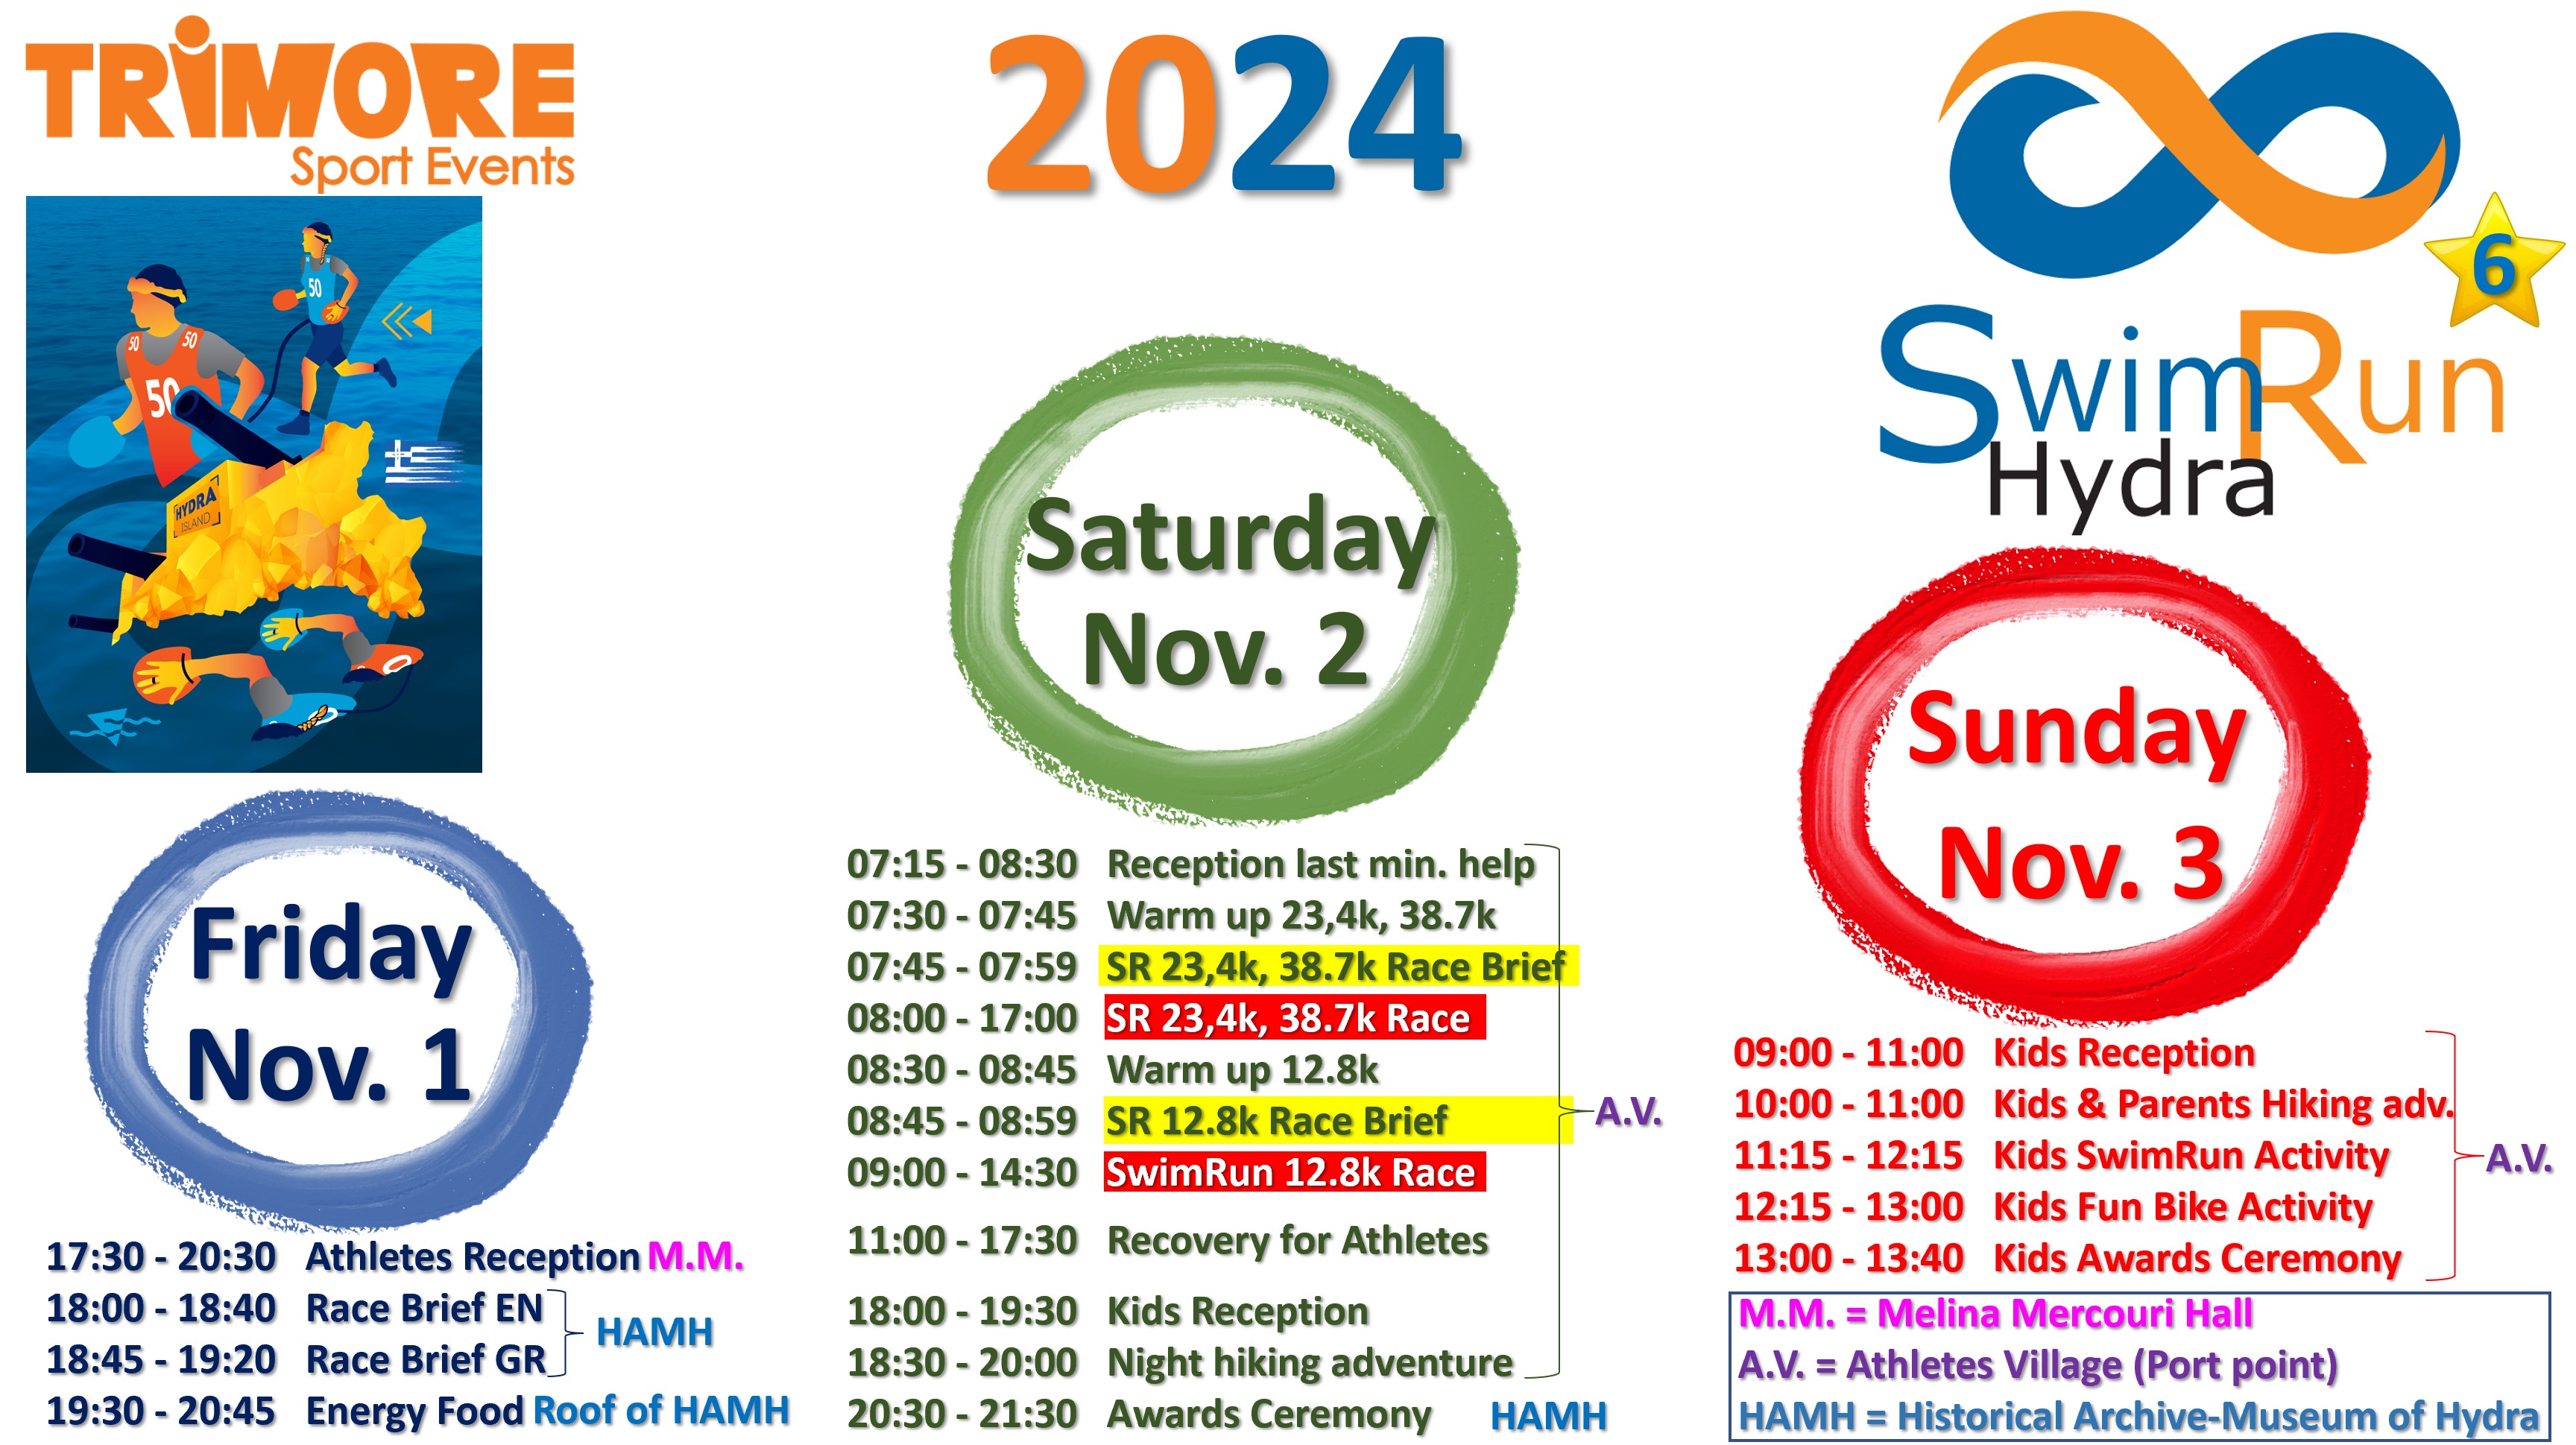 20241 TRIMORE SwimRun Hydra Events Schedule